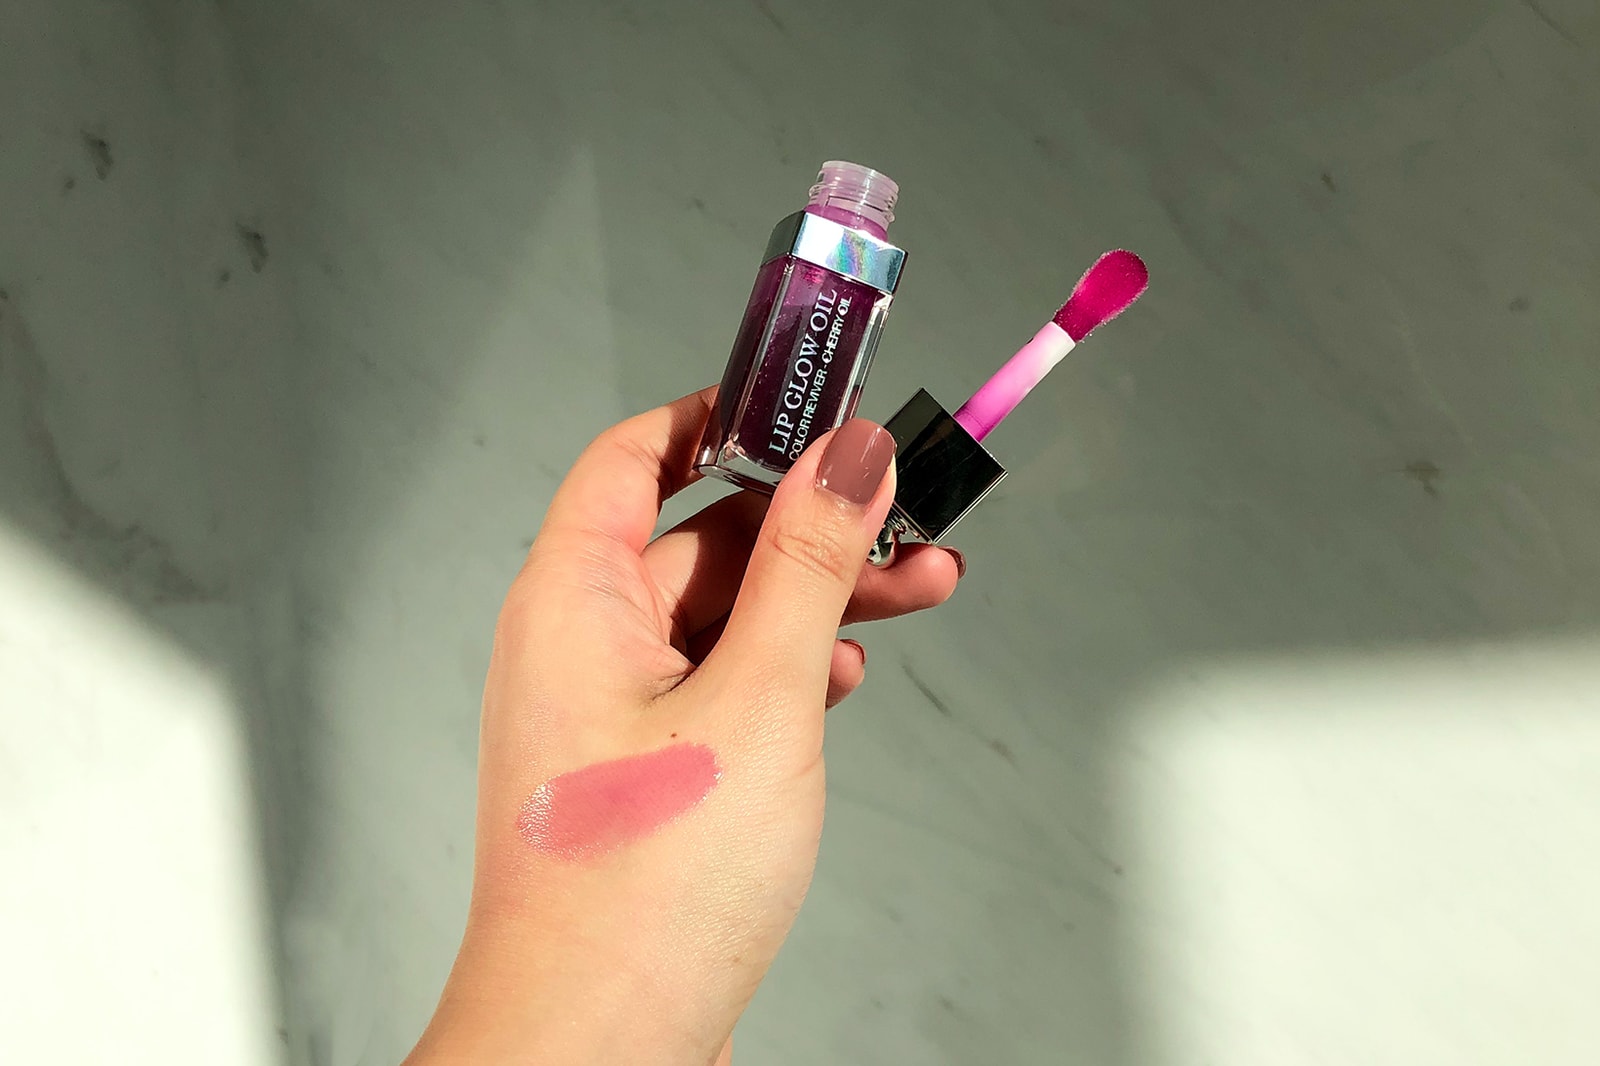 dior lip glow oil diorsnow collection pink berry makeup